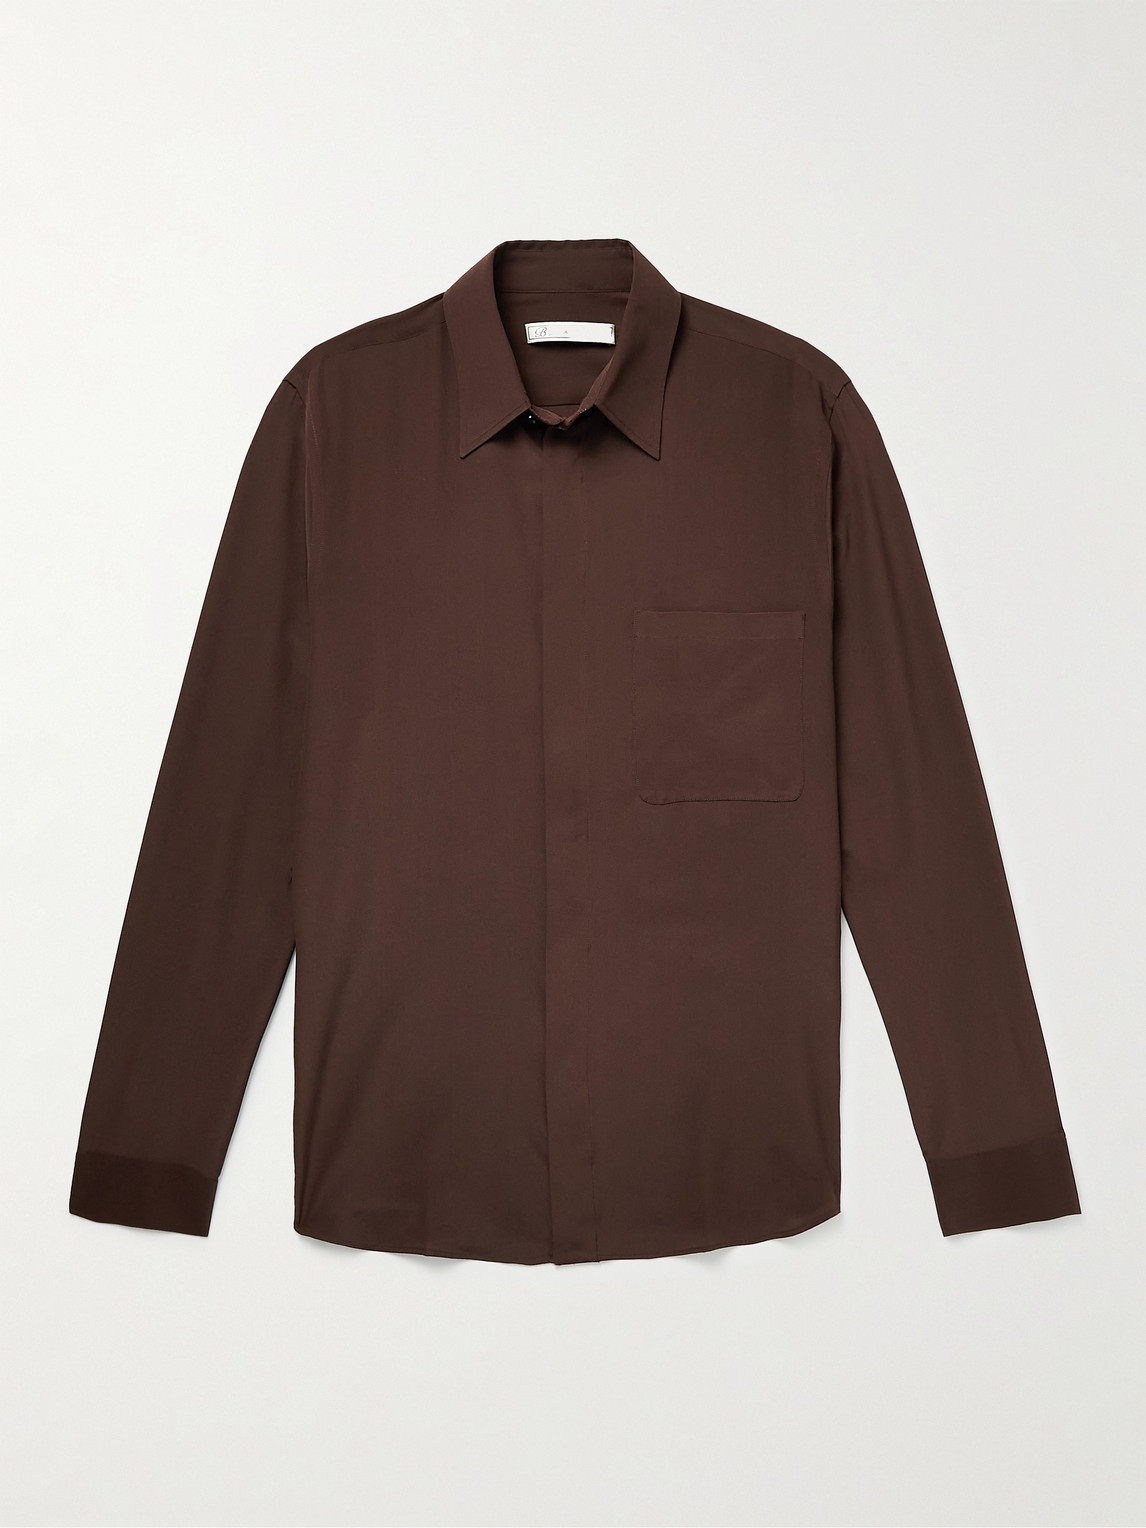 Umit Benan B+ Silk Shirt In Brown